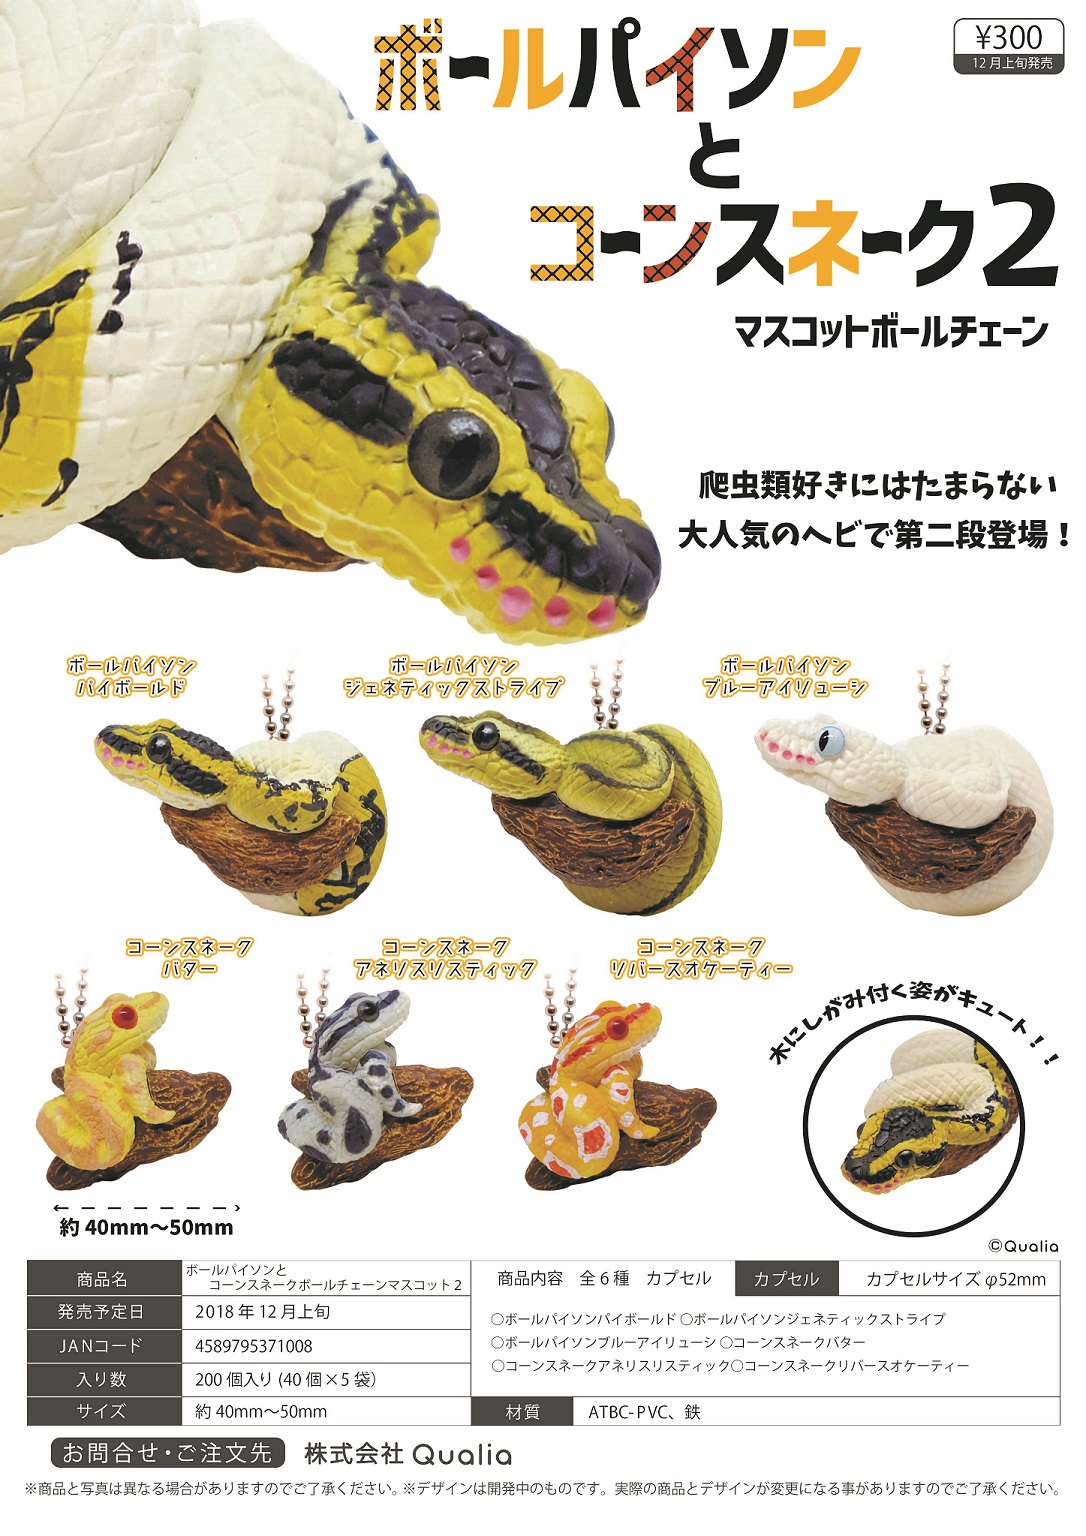 300日元扭蛋 小手办挂件 蟒蛇&蛇 盘旋树木Ver. 第二弹 全6种 (1袋40个)  371008